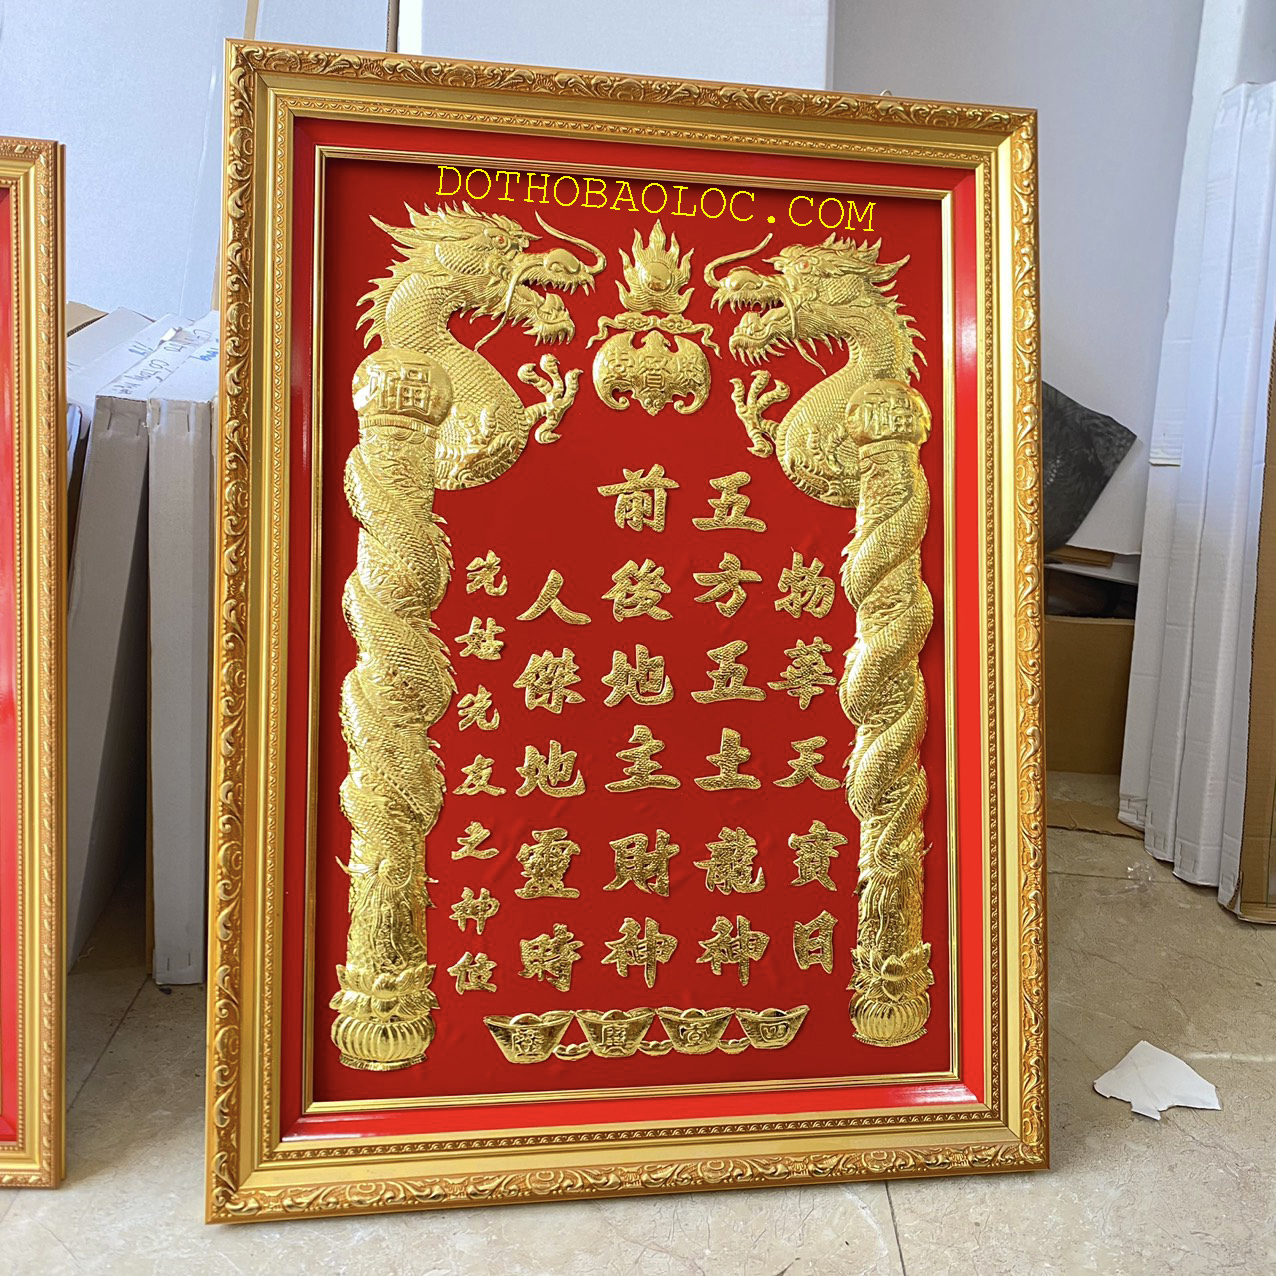 Bài vị Thần Tài Thổ Địa dát vàng 24 K 42cm x 60cm – Nền đỏ ( 2 loại: Có đèn và Không đèn) – Khung nhựa nhập khẩu